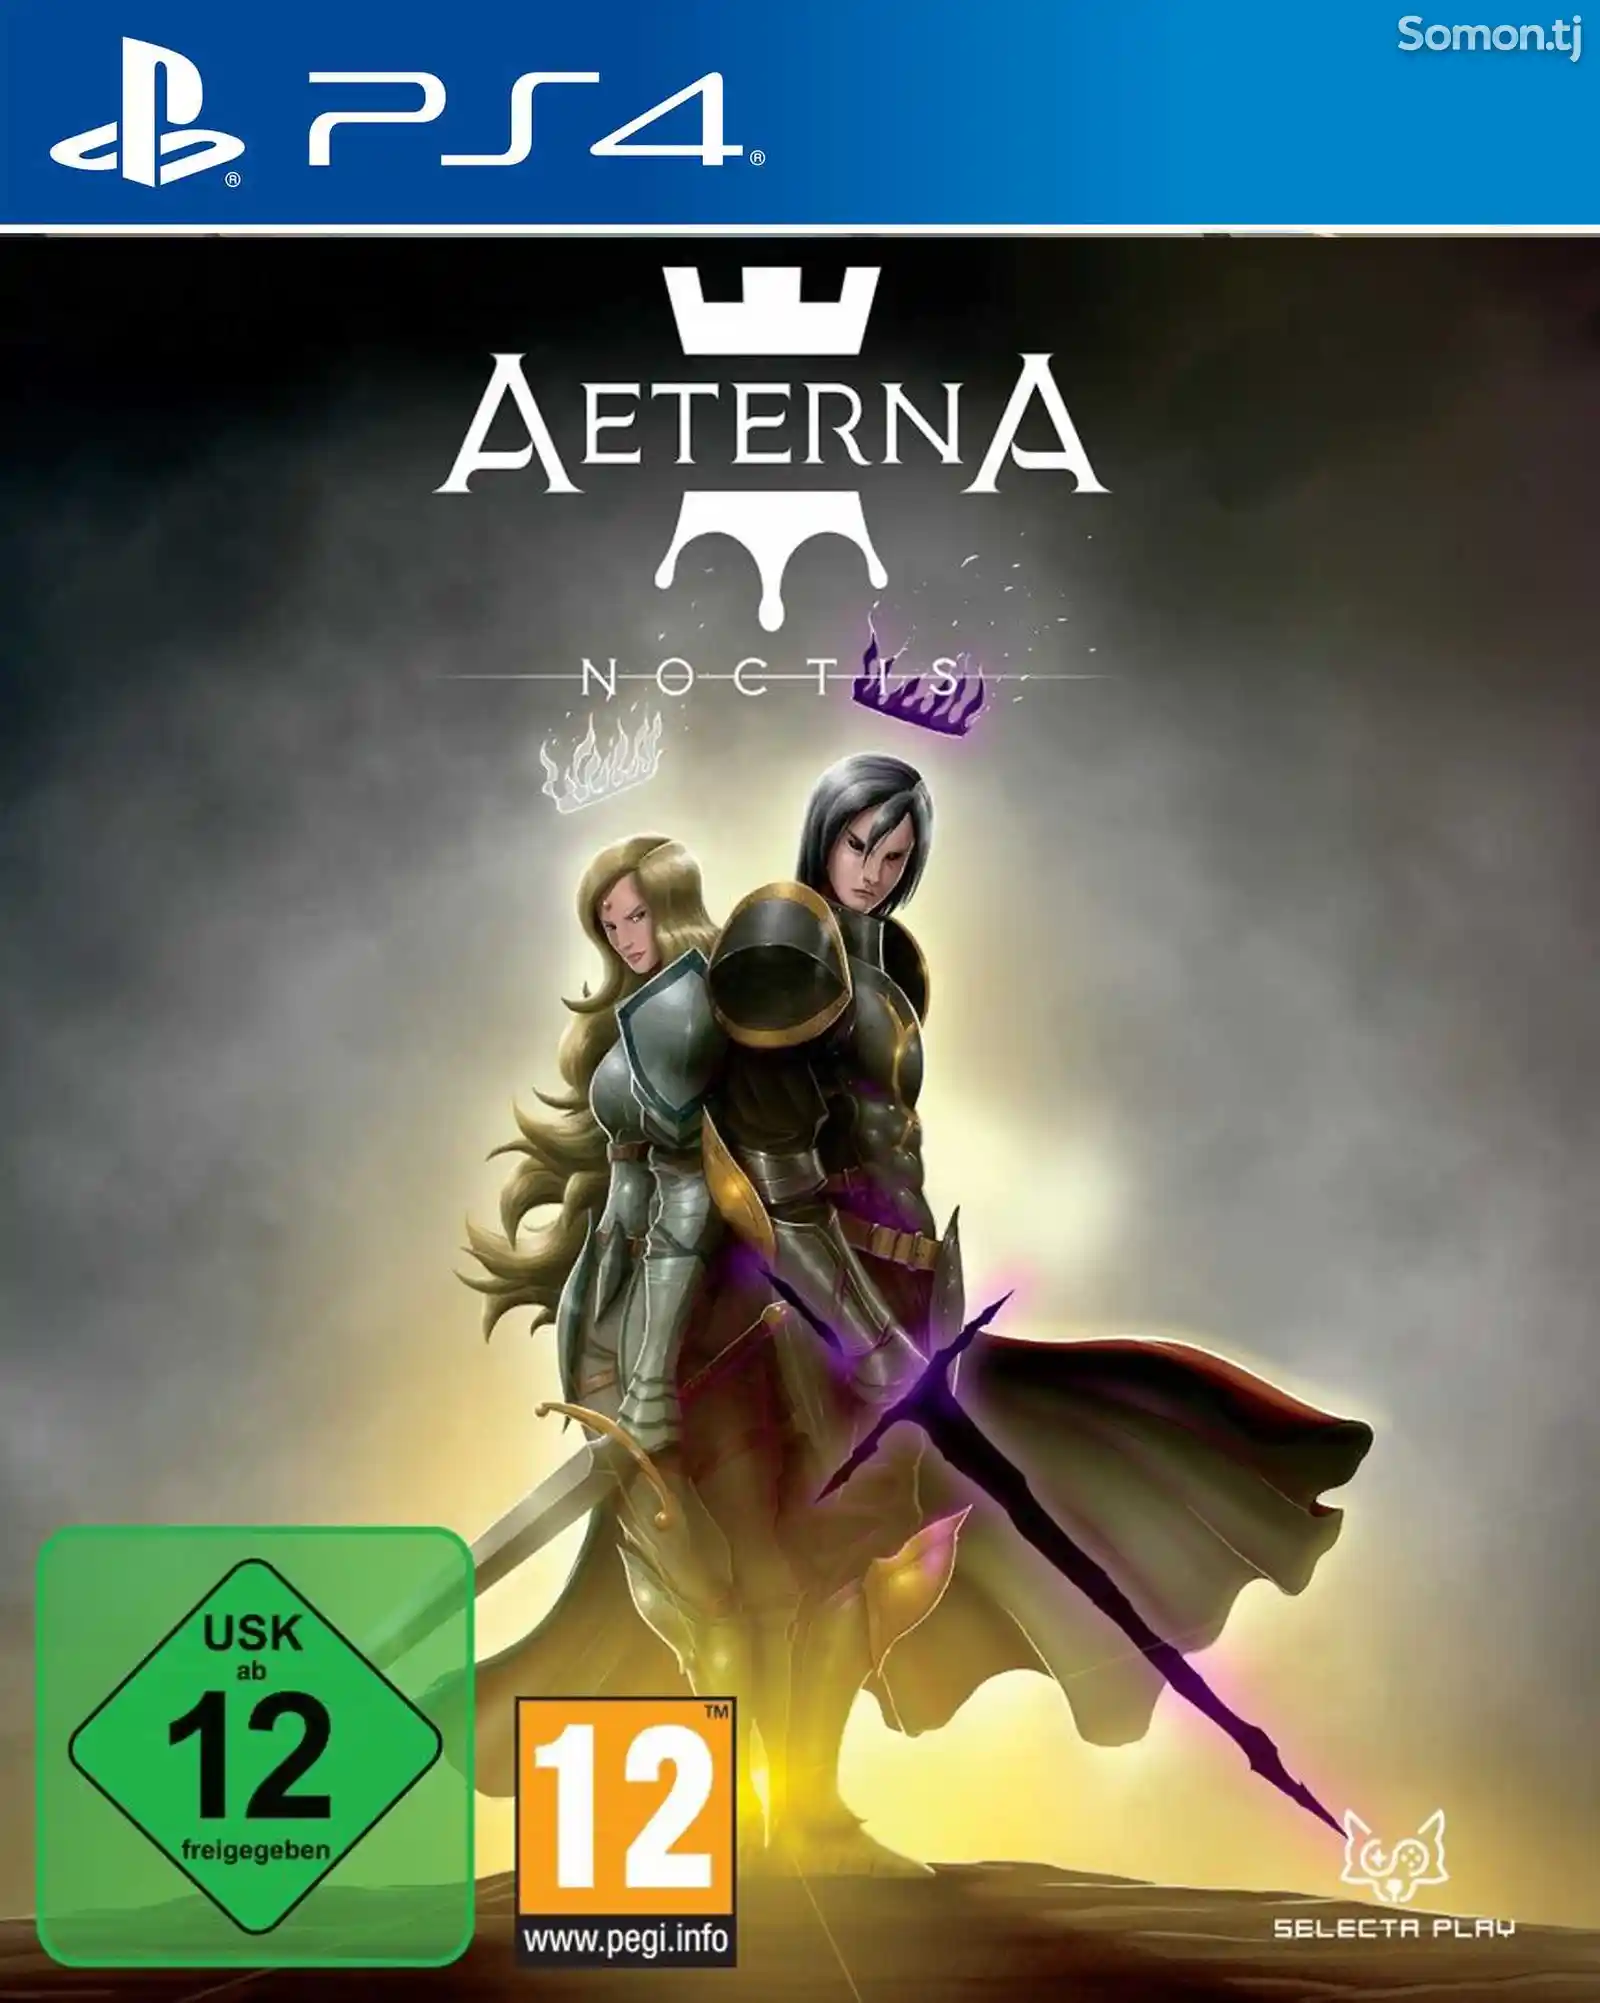 Игра Aeterna noctis для PS-4 / 5.05 / 6.72 / 7.02 / 7.55 / 9.00 /-1